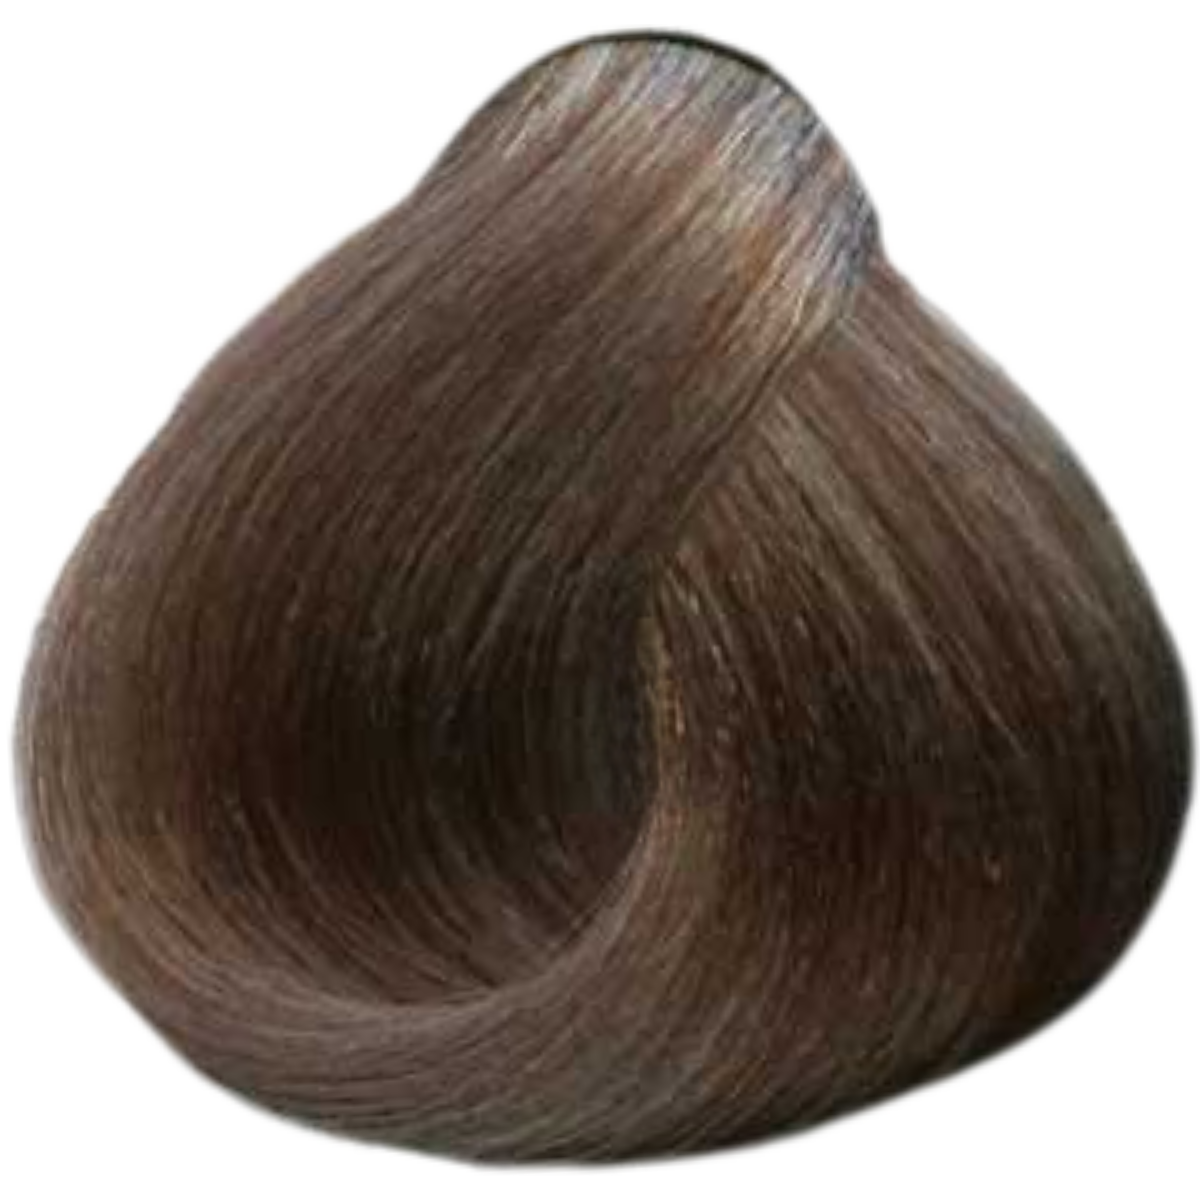 צבע שיער 9.72 VERY LIGHT BROWN IRIDESCENT BLONDE פארמויטה FarmaVita צבע לשיער 60 גרם